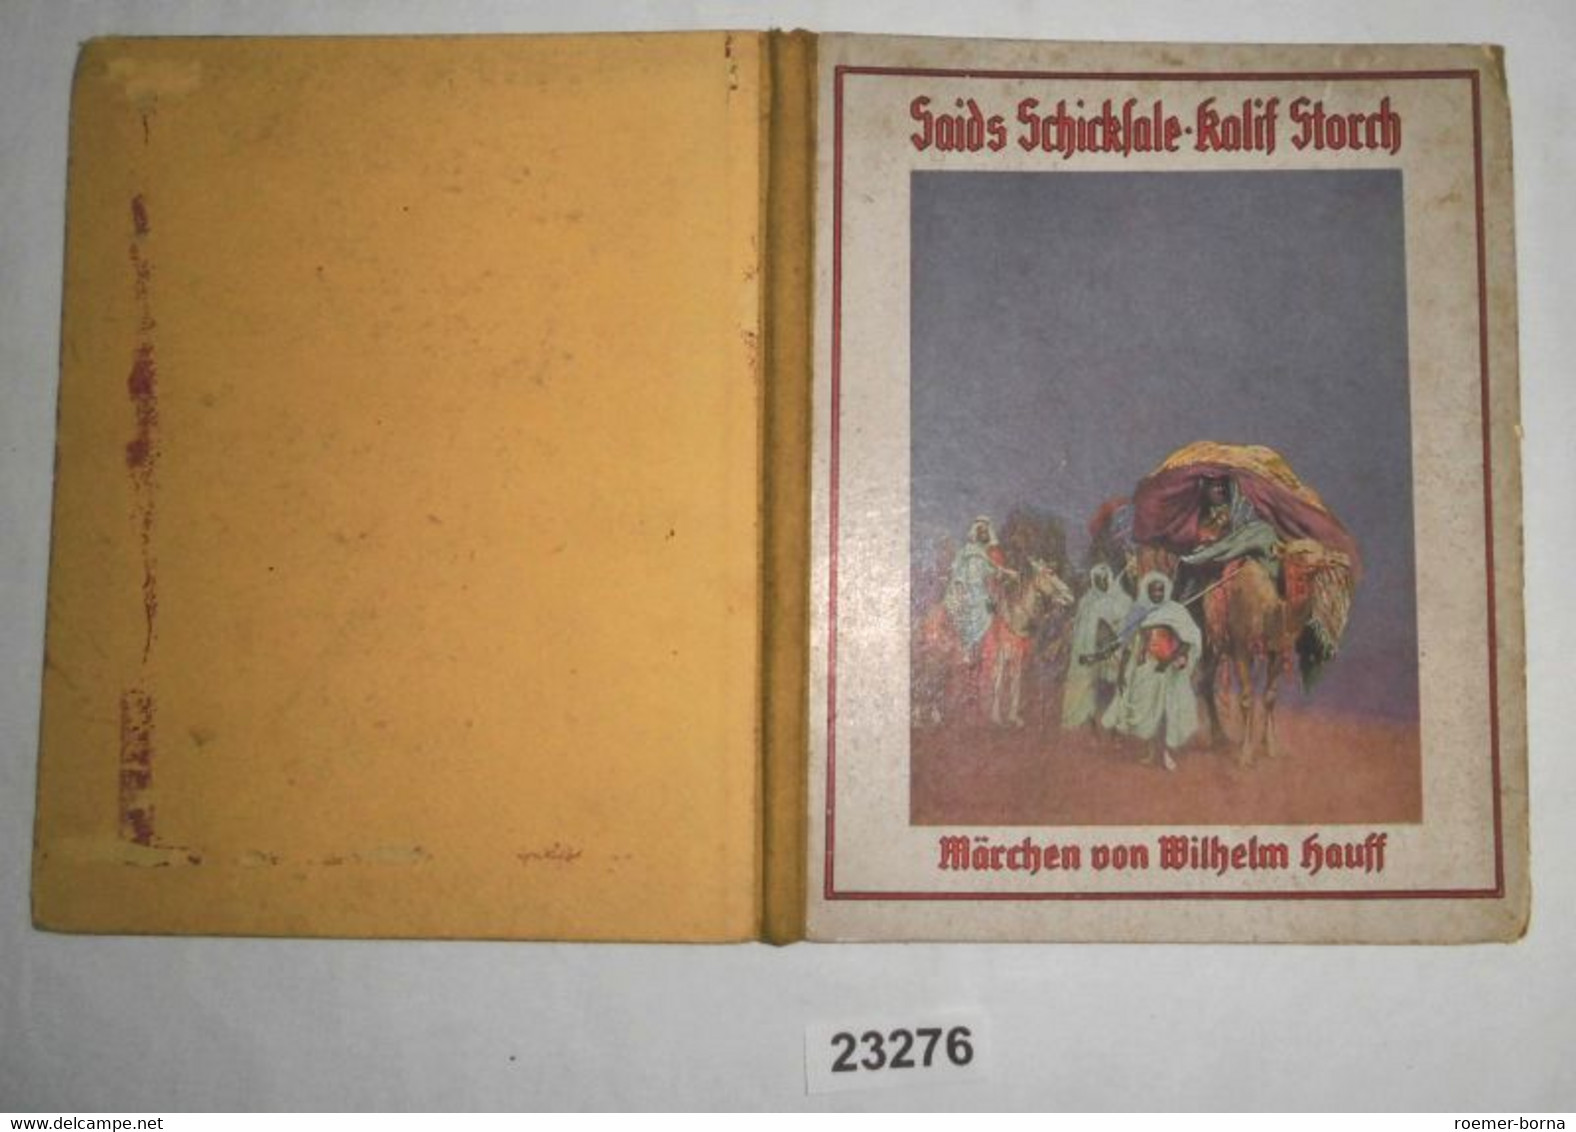 Saids Schicksale - Kalif Storch (Märchen) - Tales